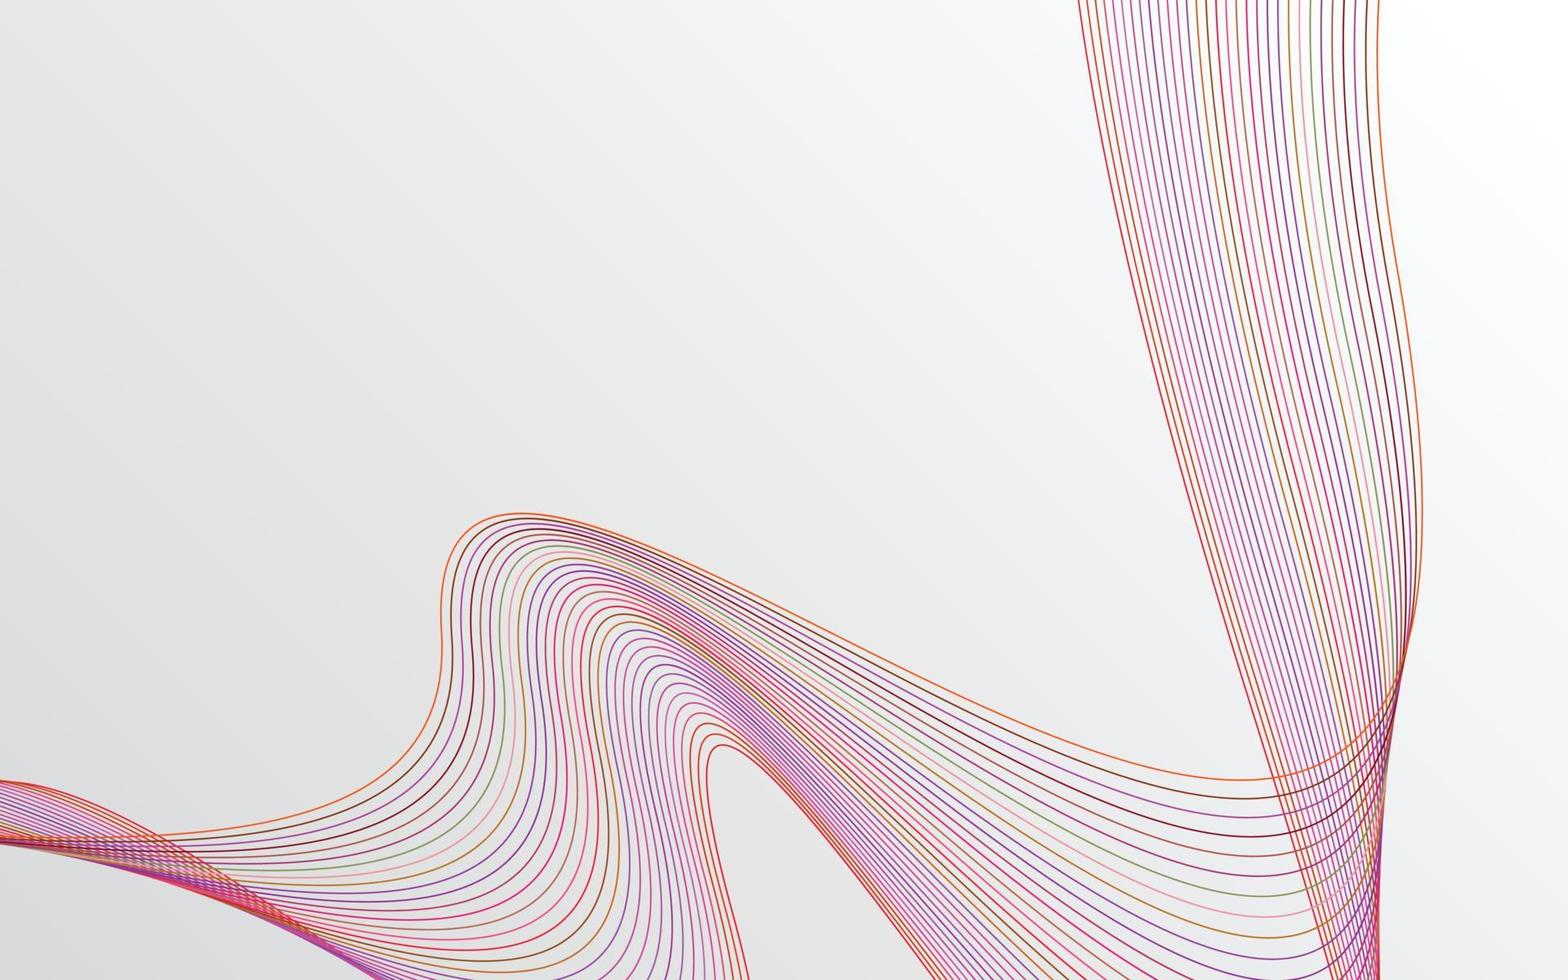 vague des nombreuses lignes colorées. abstrait rayures ondulées fond isolé vecteur